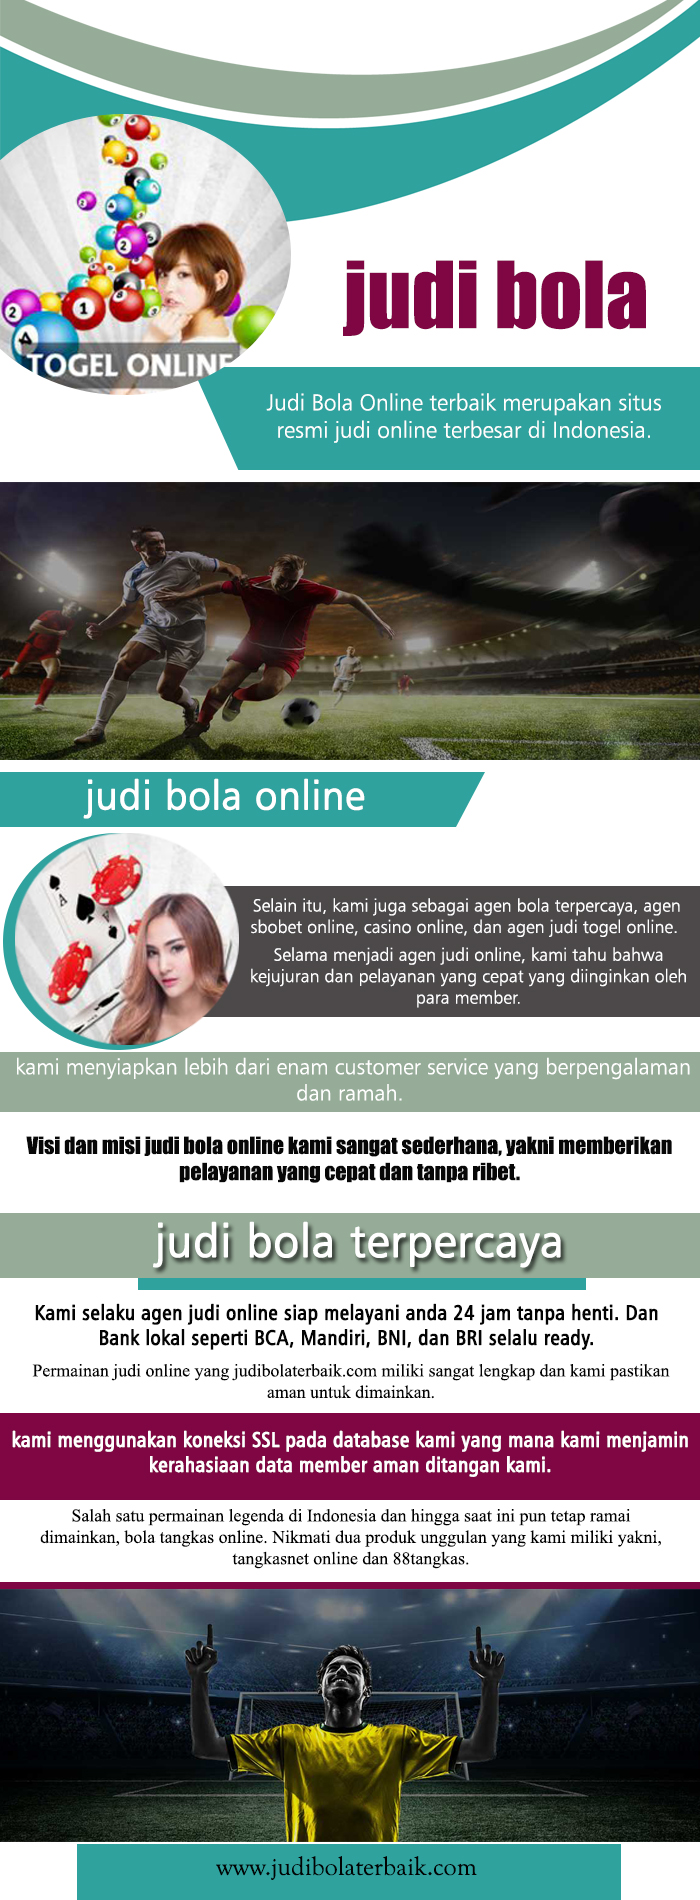 website judi bola indonesia hubungi kami sekarang